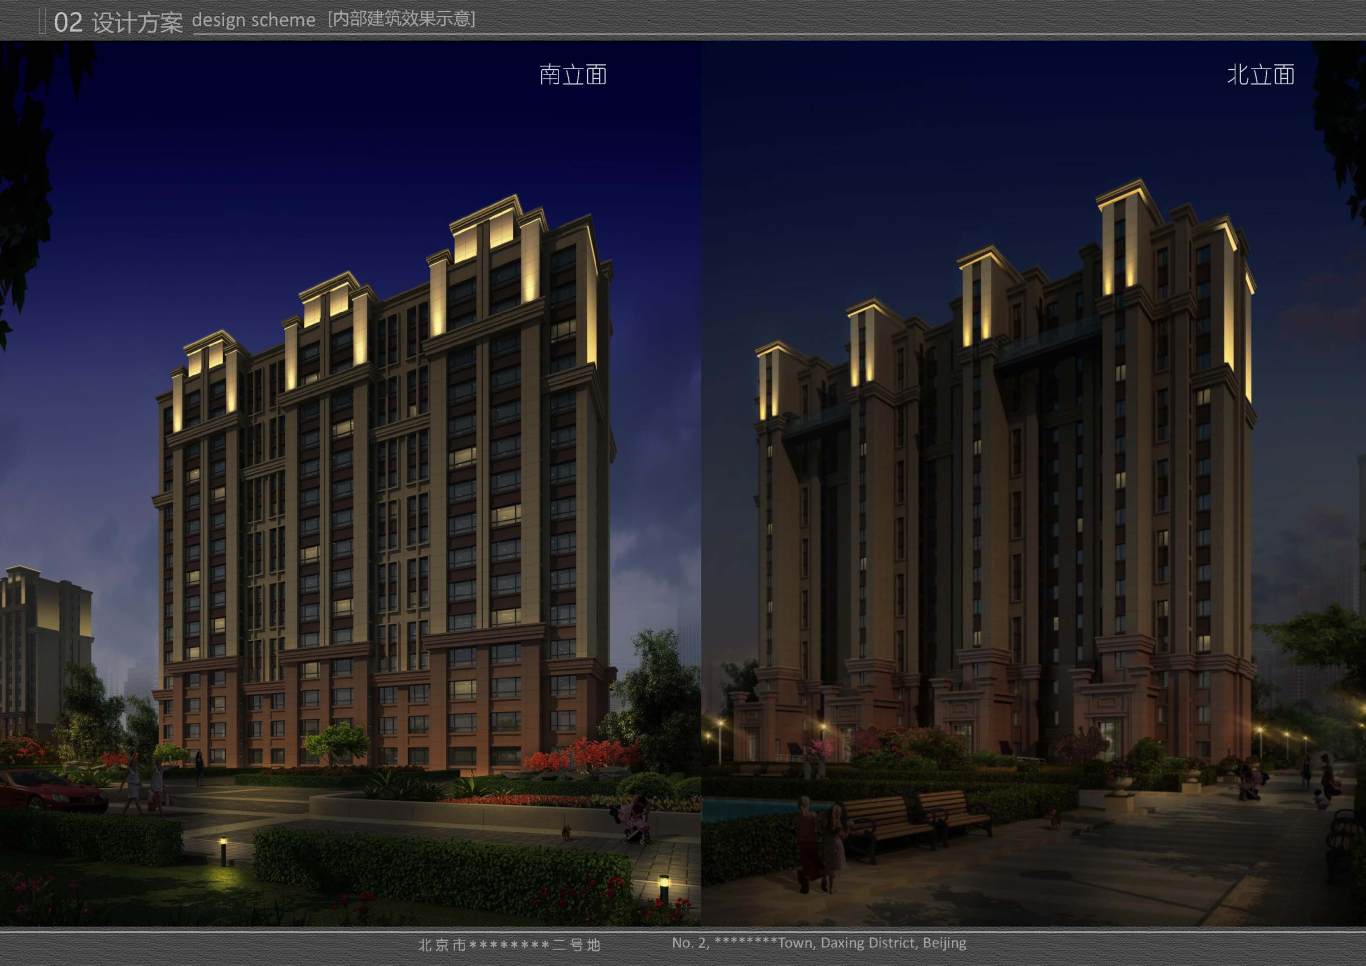 北京市大兴区*****二号地夜景照明项目案例图19